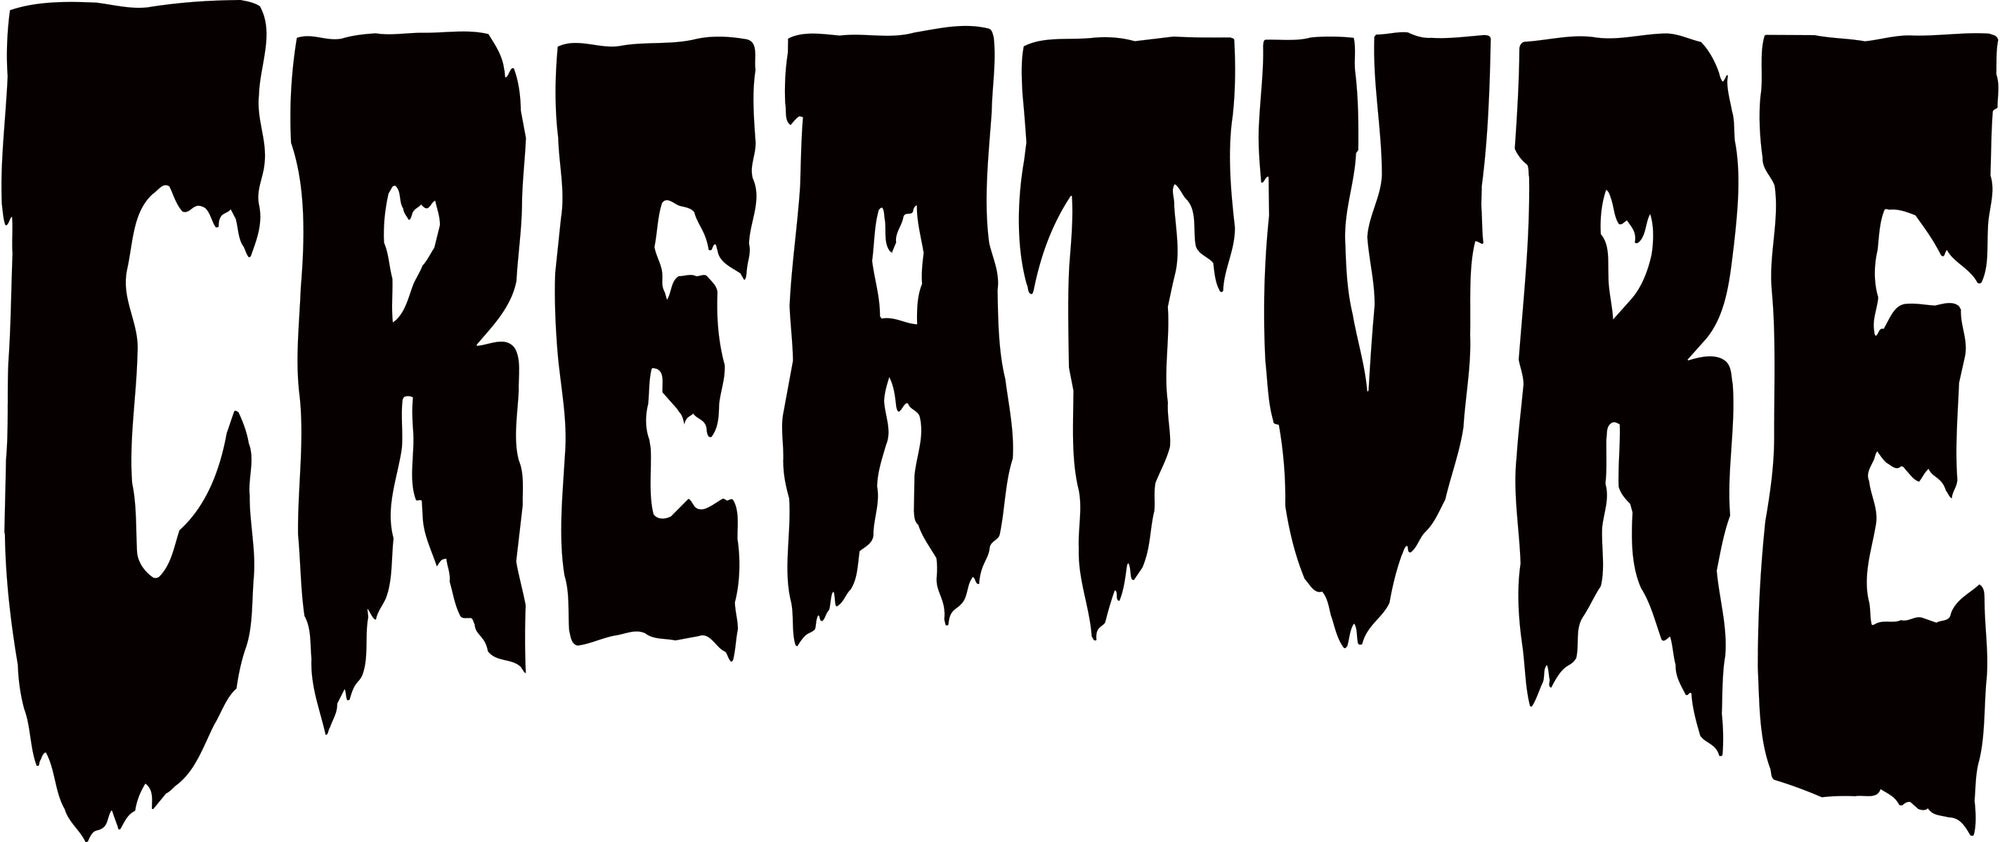 creature logo